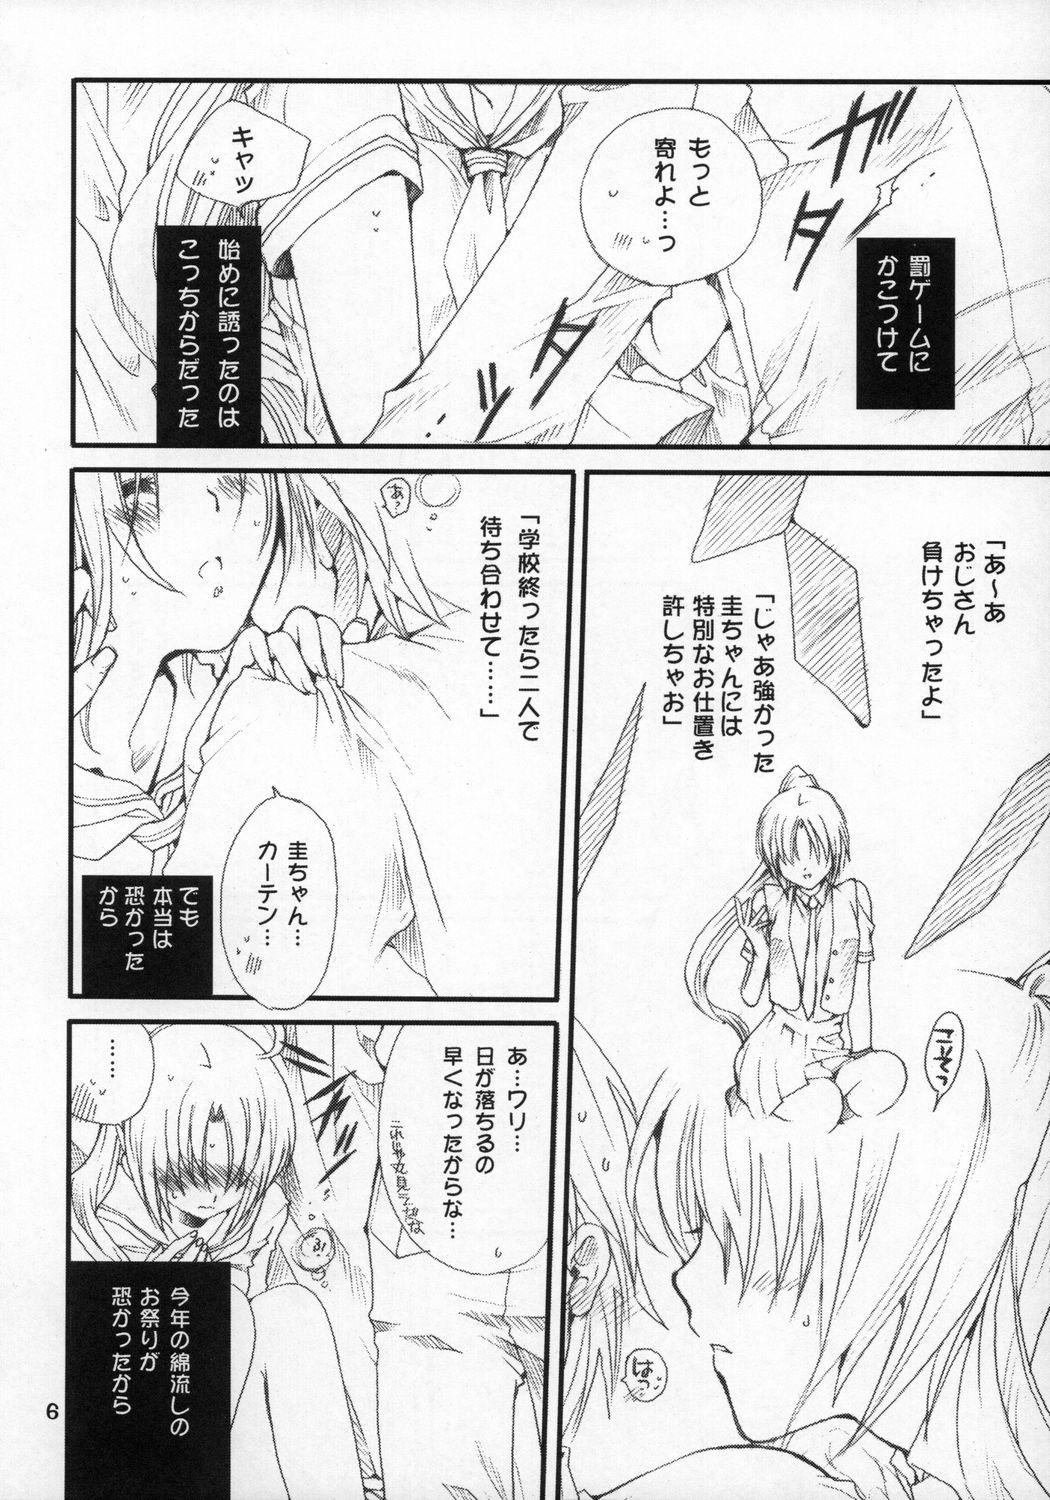 Short Mion-san Ganbaru! - Higurashi no naku koro ni Free Hard Core Porn - Page 5